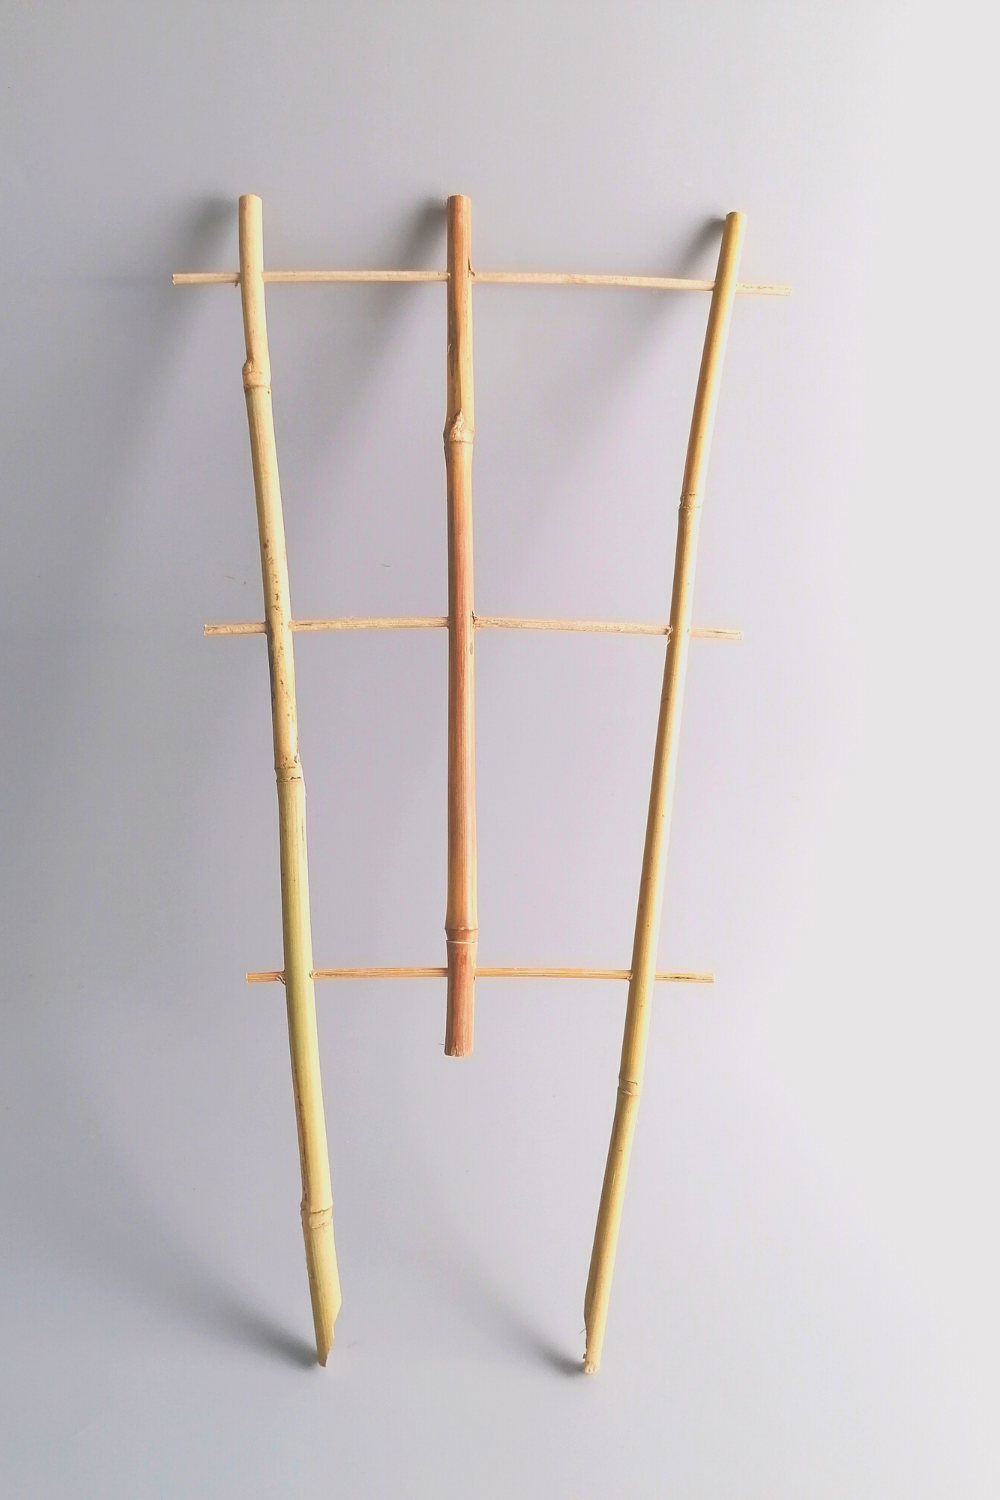 3 Bamboo Climbing Racks 45 cm